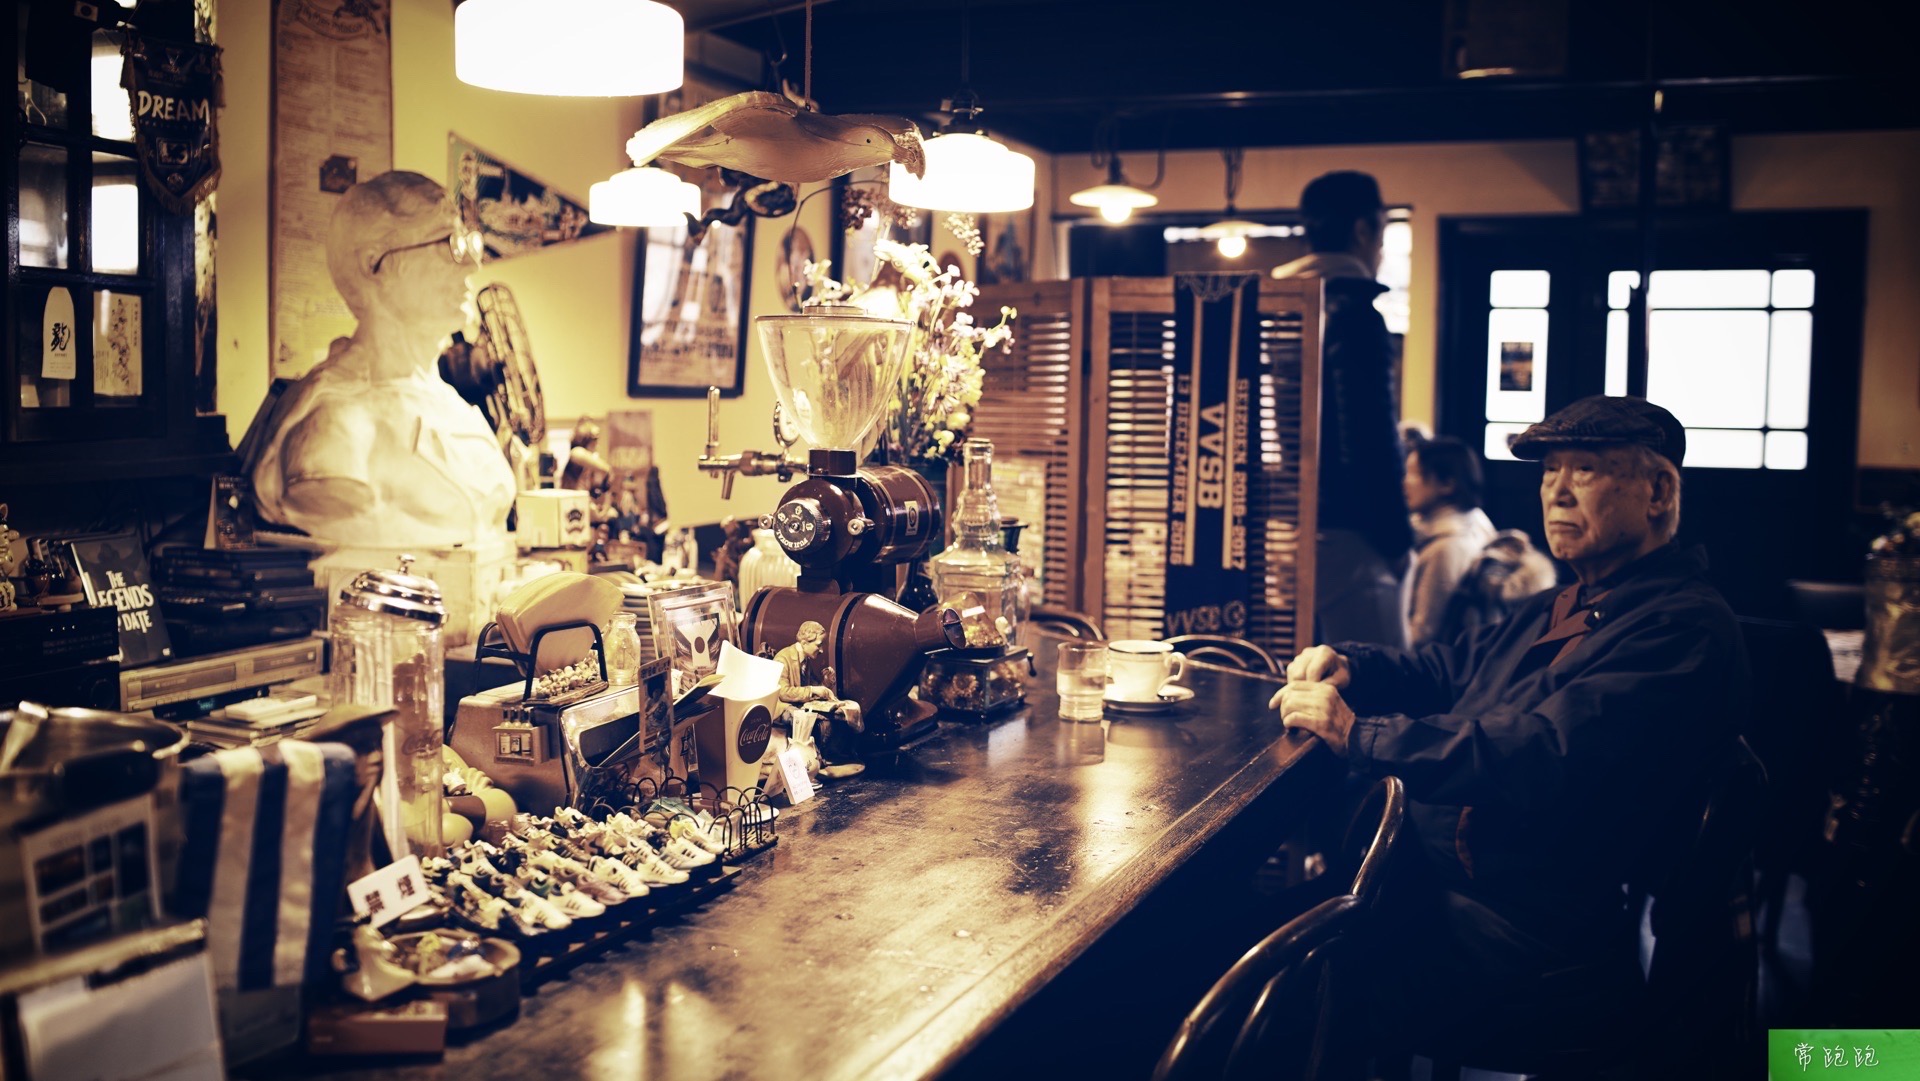 这一口咖啡 品的是停驻在咖啡馆里的老时光 虽然咖啡馆文化源于西方，但在日本，经过近二百年的沉淀和融合